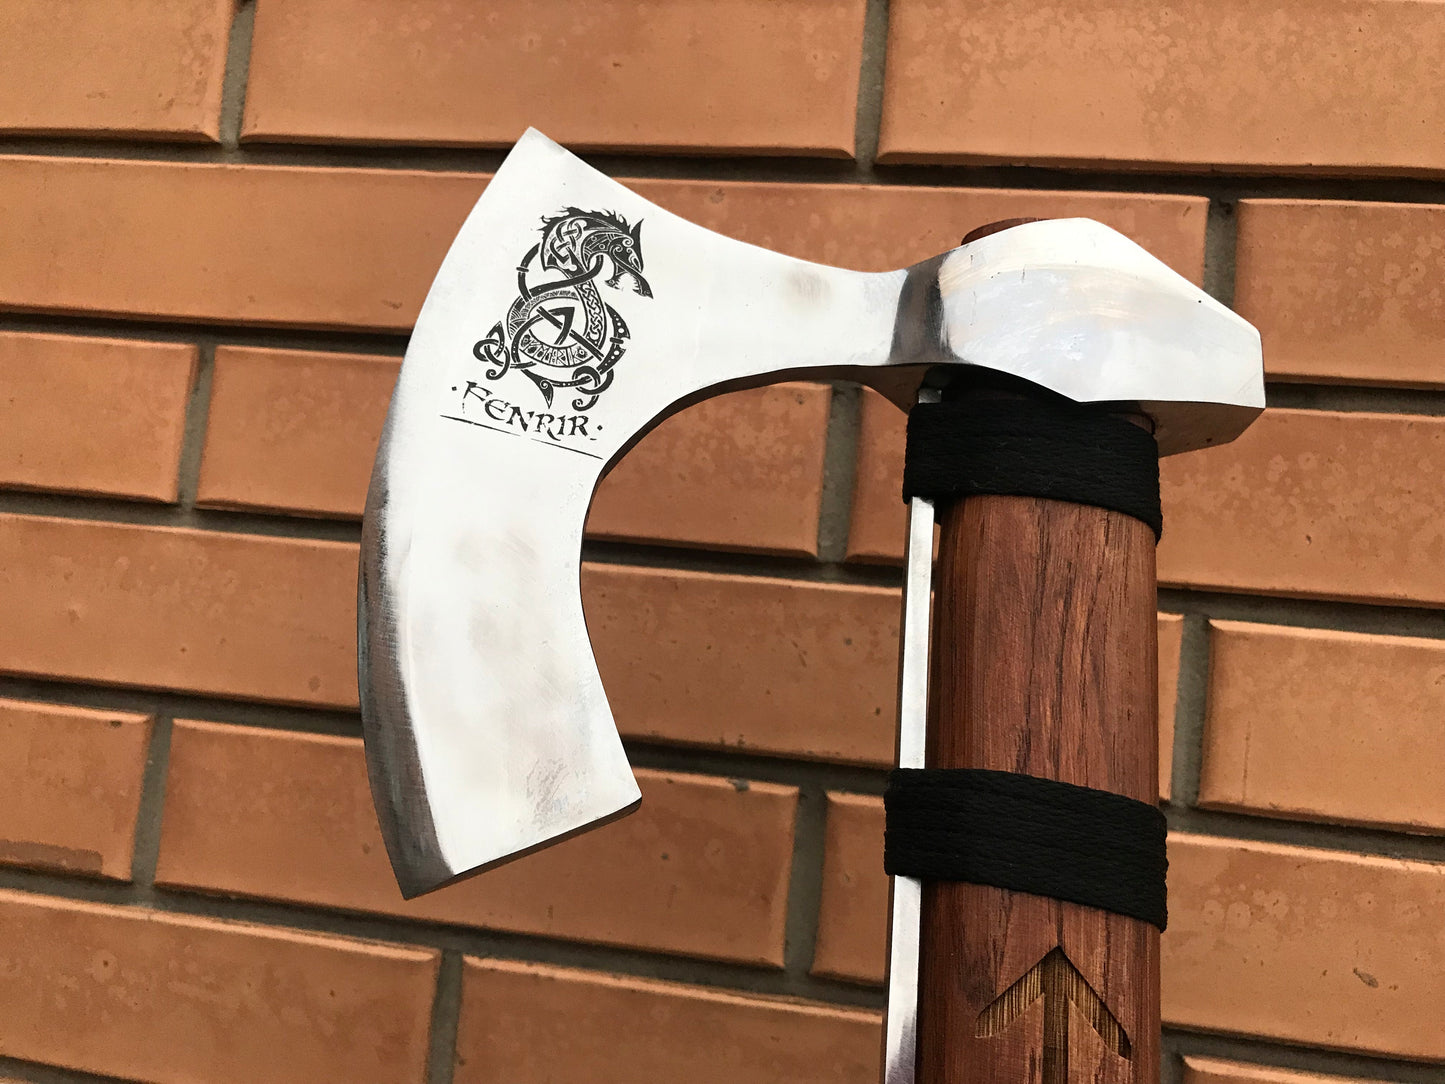 Runic axe, Fenrir, perun axe, pagan axe, viking axe, Ragnar, Dane axe, The Raider, bearded axe,Norse axe,berserker axe,mjolnir,viking weapon